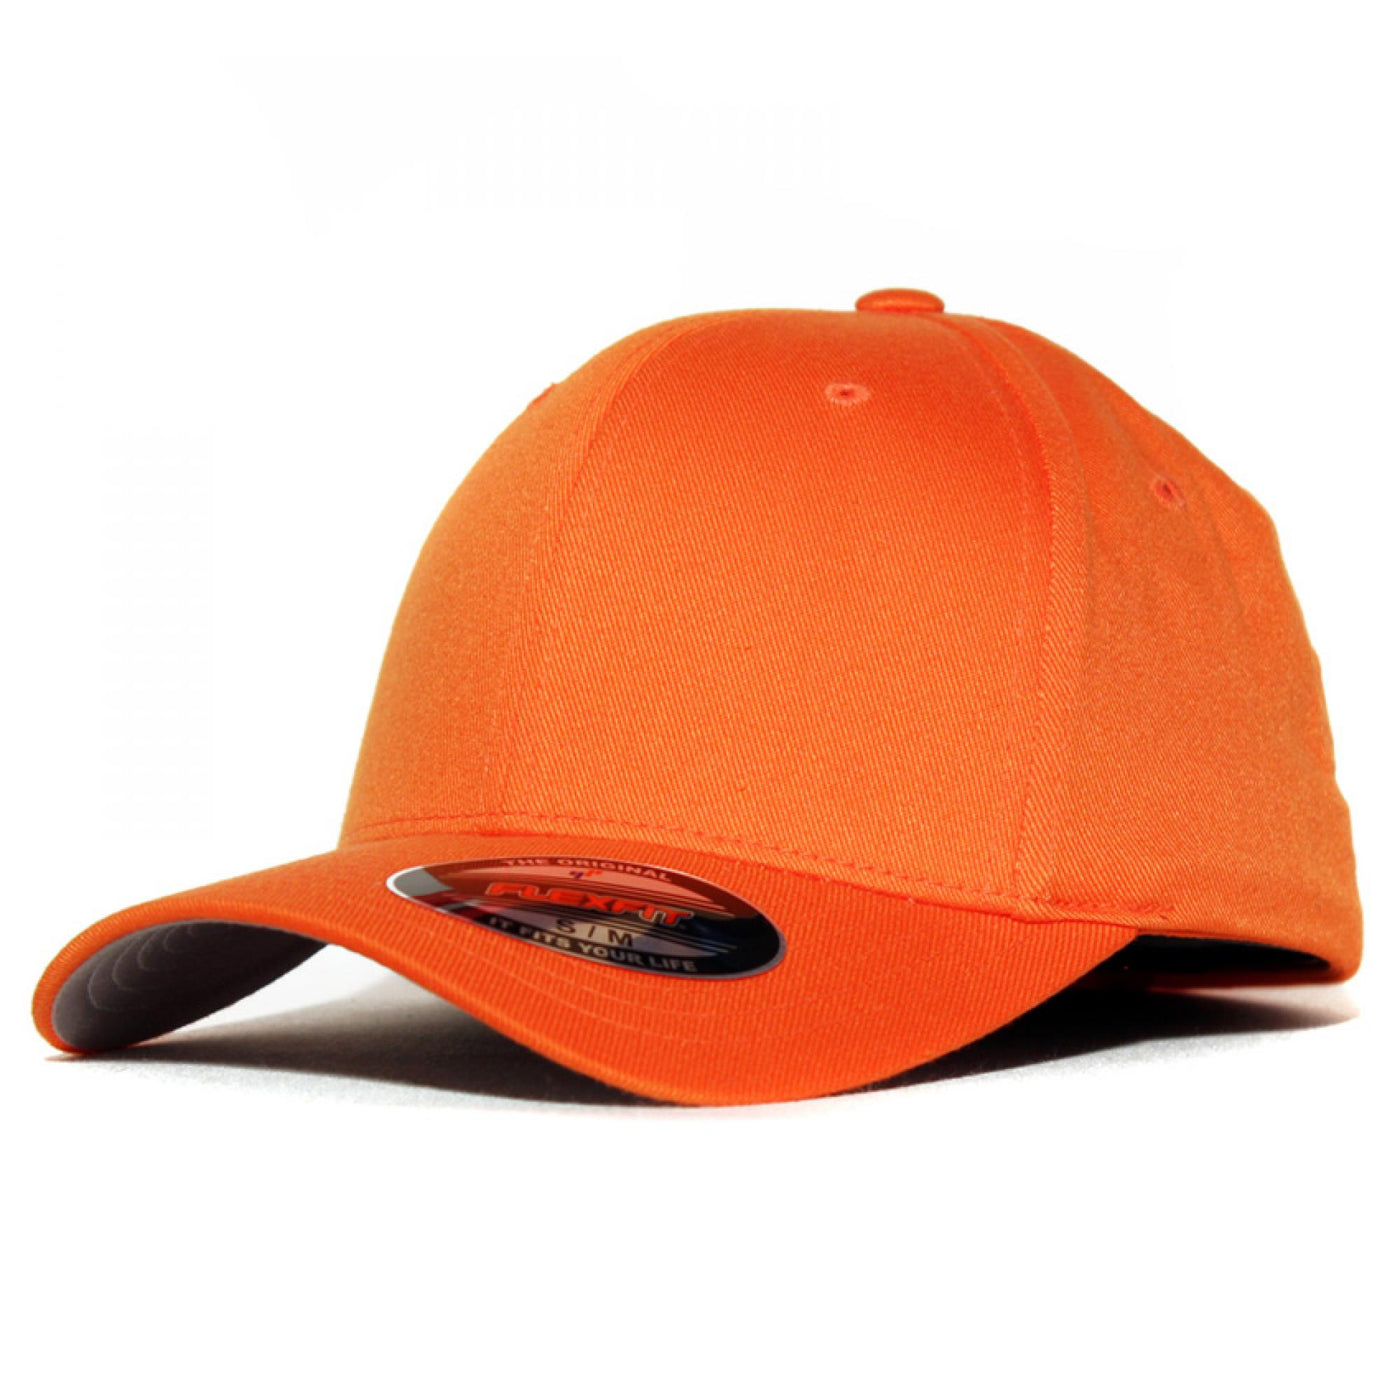 Flexfit cap orange - Shop-Tetuan